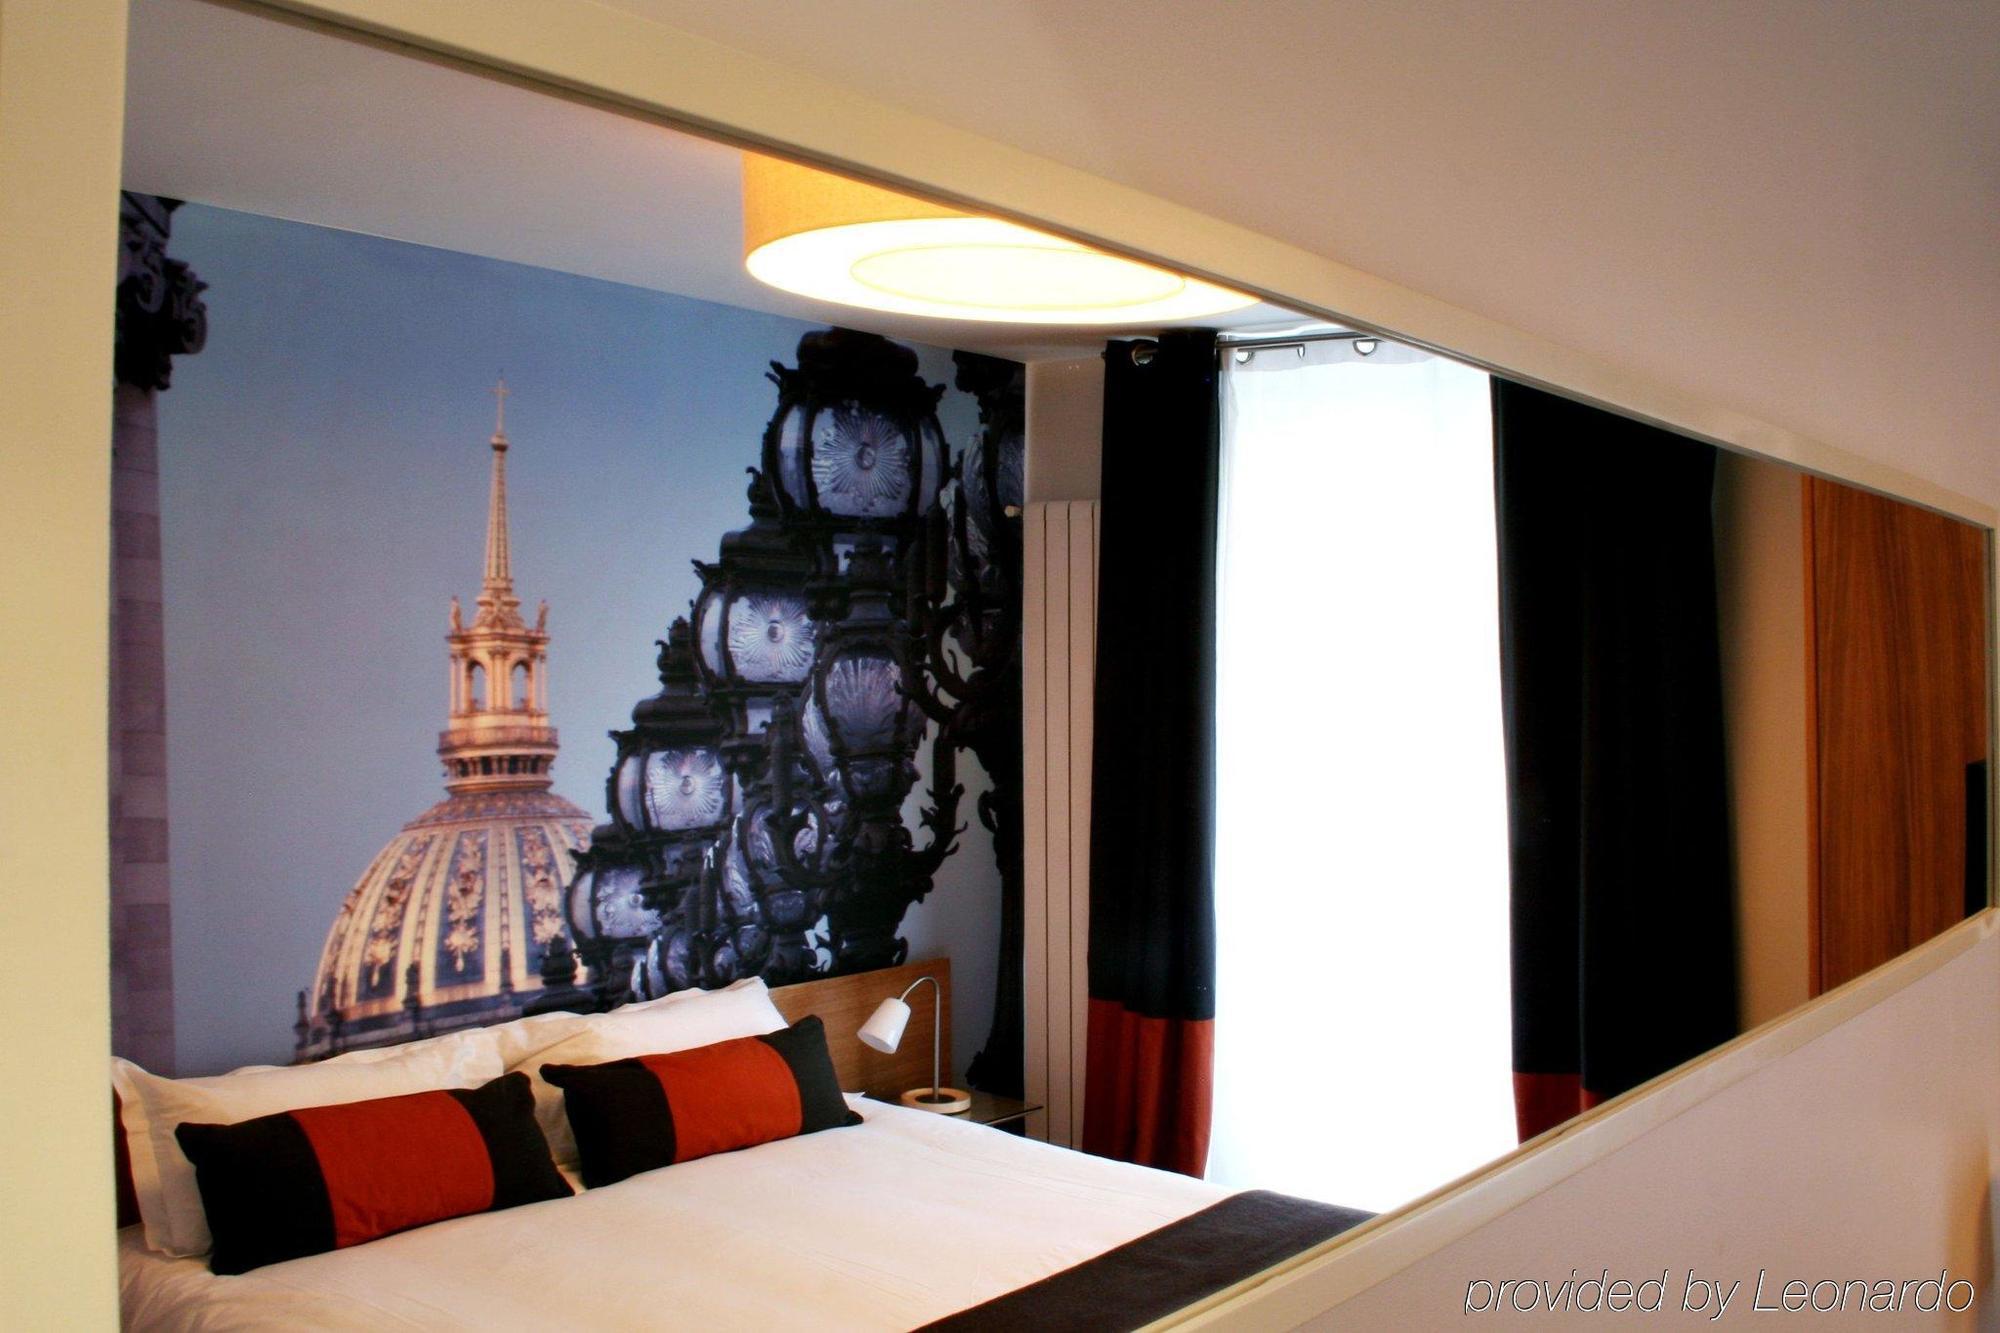 Le 20 Prieure Hotel Paris Exterior photo